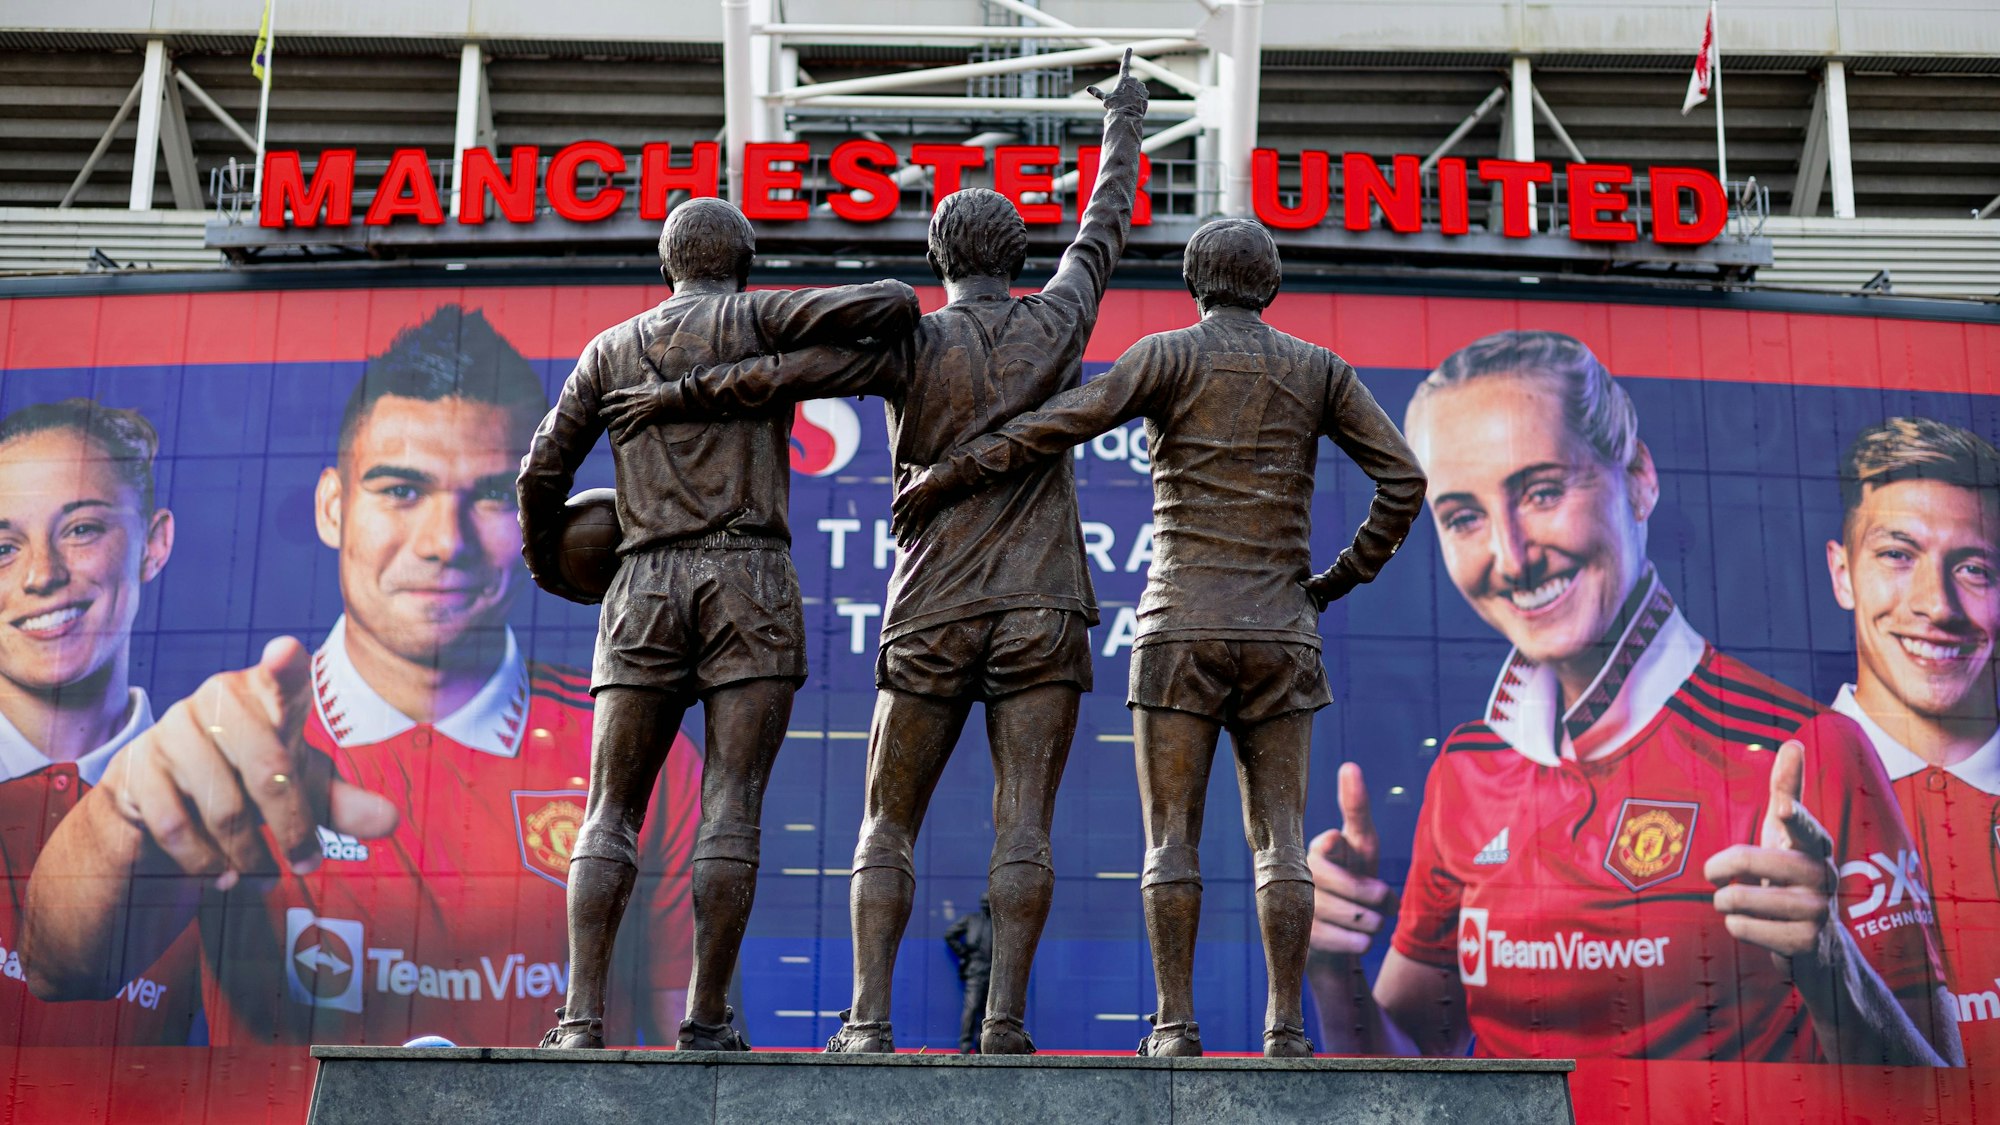 Ein Blick auf das Old Trafford und die Statue von George Best, Dennis Law und Bobby Charlton vor dem Stadion in Manchester.